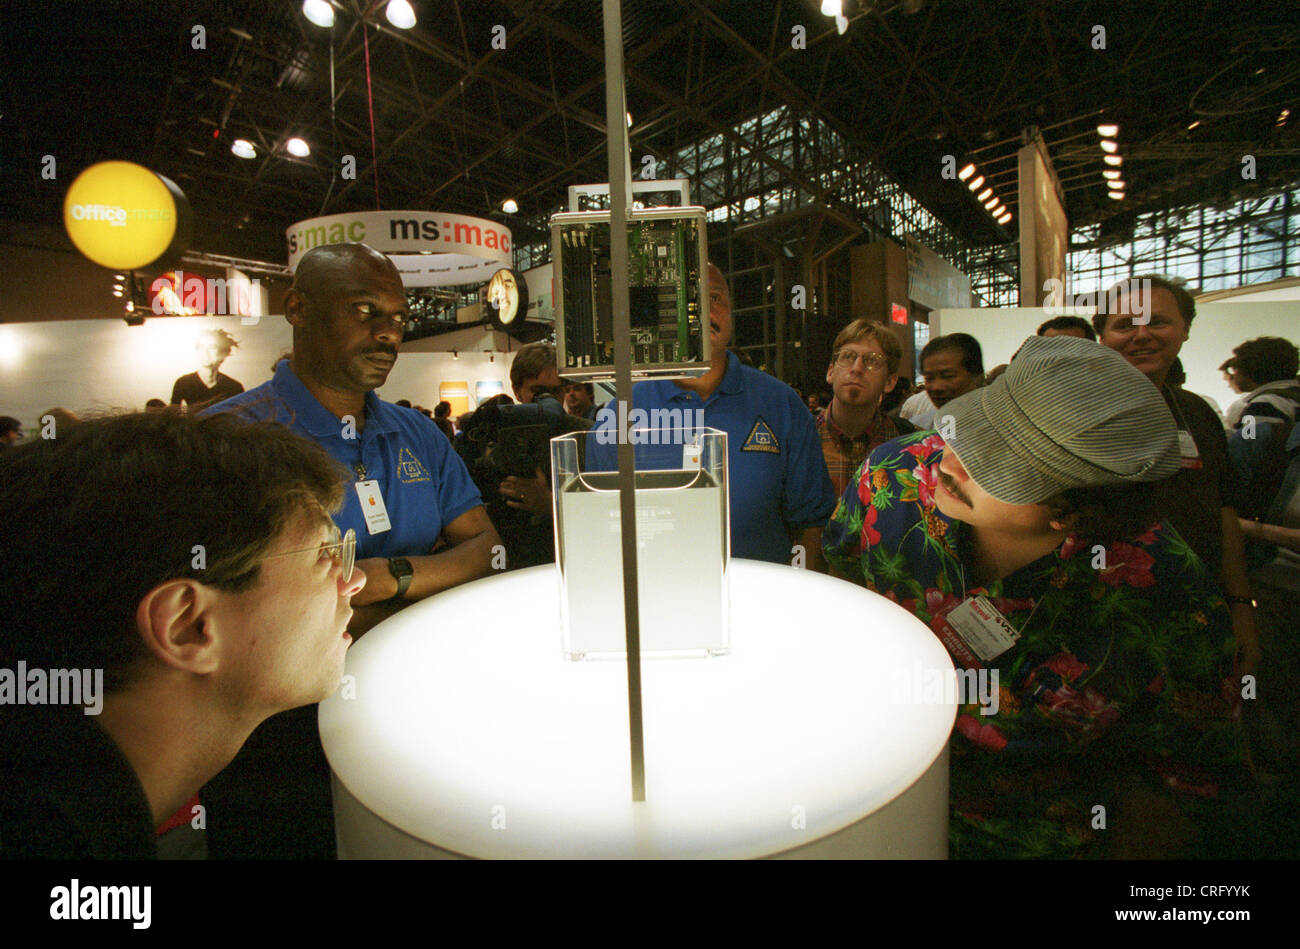 New York, USA, Macworld Expo 2000 in NYC Stock Photo